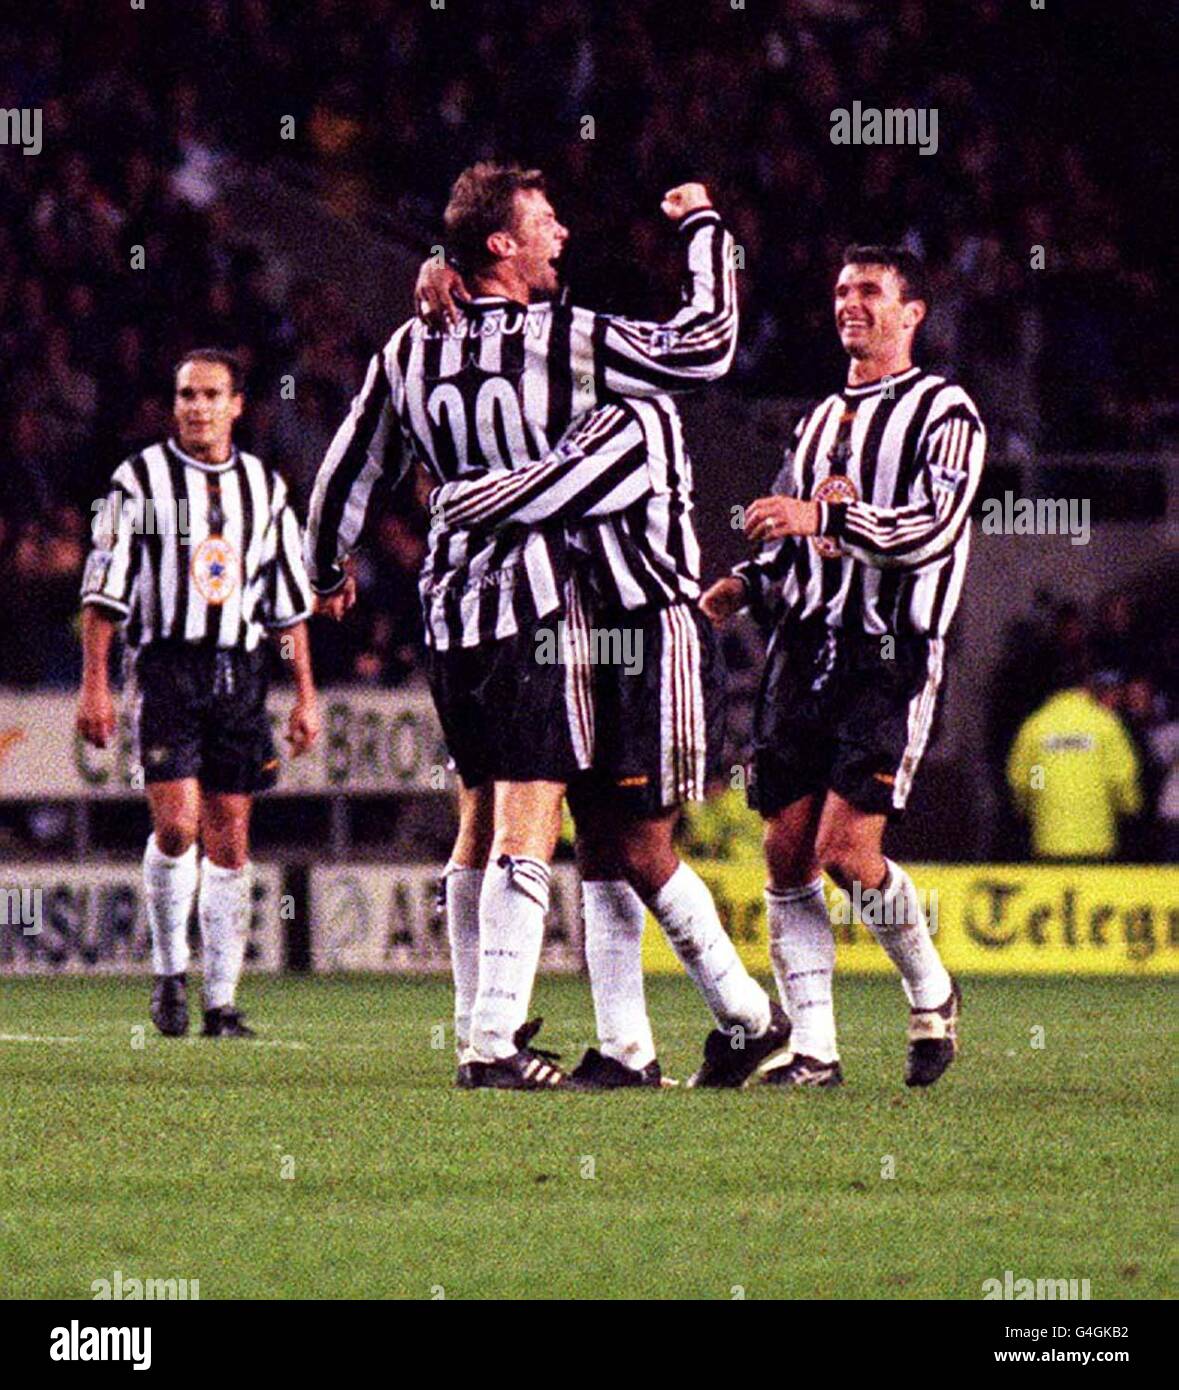 Duncan Ferguson von Newcastle United feiert sein Markenzeichen, nachdem er sein zweites Tor für Newcastle beim Samstag, den 28. November 1998, beim FA Carling Premiership Clash im St. James's Park erzielt hat. Newcastle besiegte Wimbledon mit 3:1. Foto von John Giles/PA Stockfoto